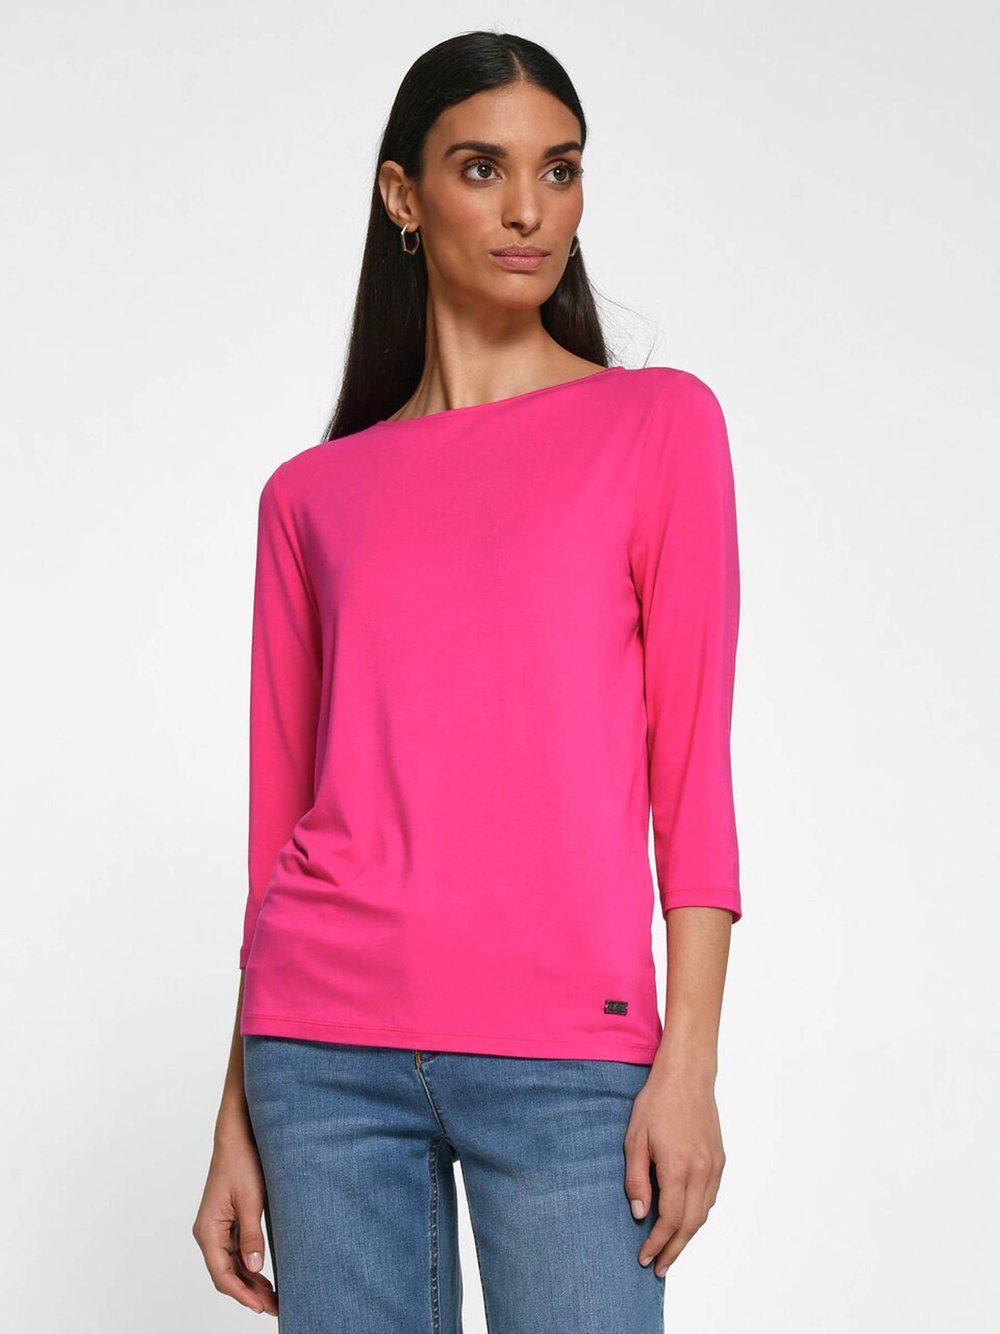 TALBOT RUNHOF X PETER HAHN Shirt Damen Viskose, pink von Talbot Runhof